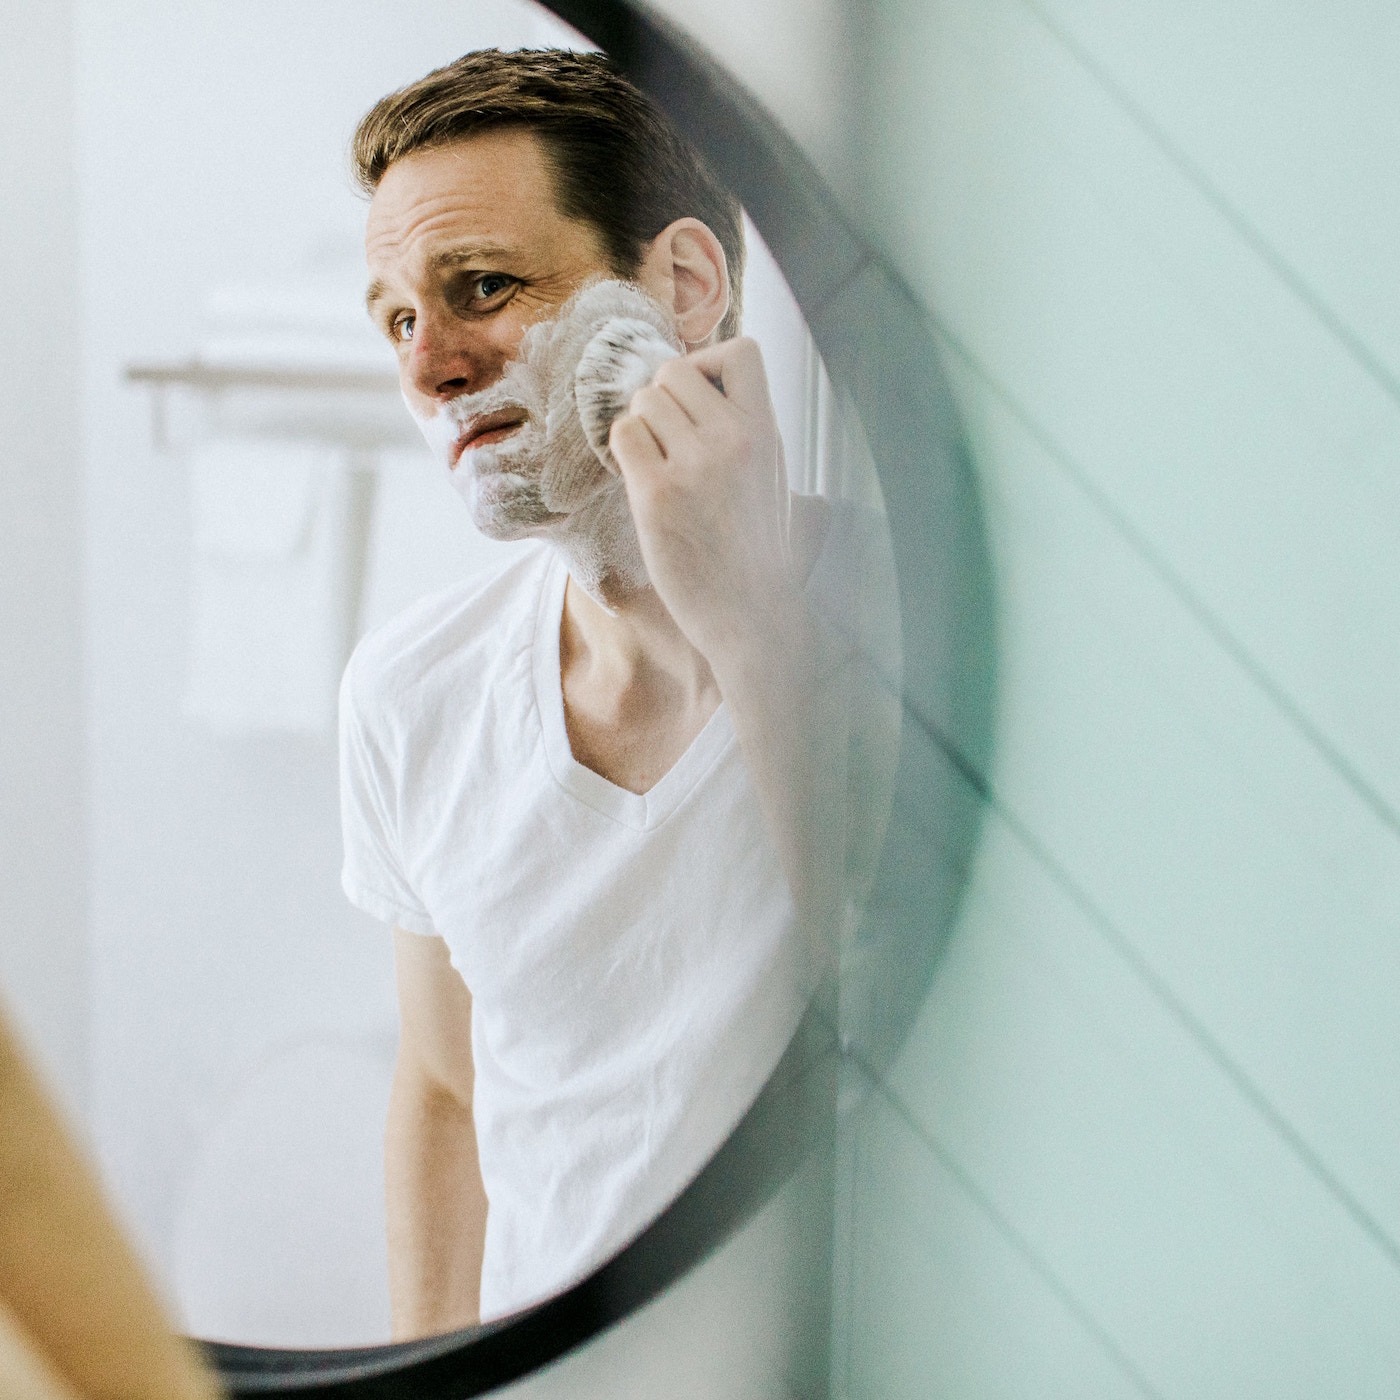 Dr.-Spiller-Manage-Your-Skin-Calming-After-Shave-Balm-abloomnova.net_ Shaving tips for men